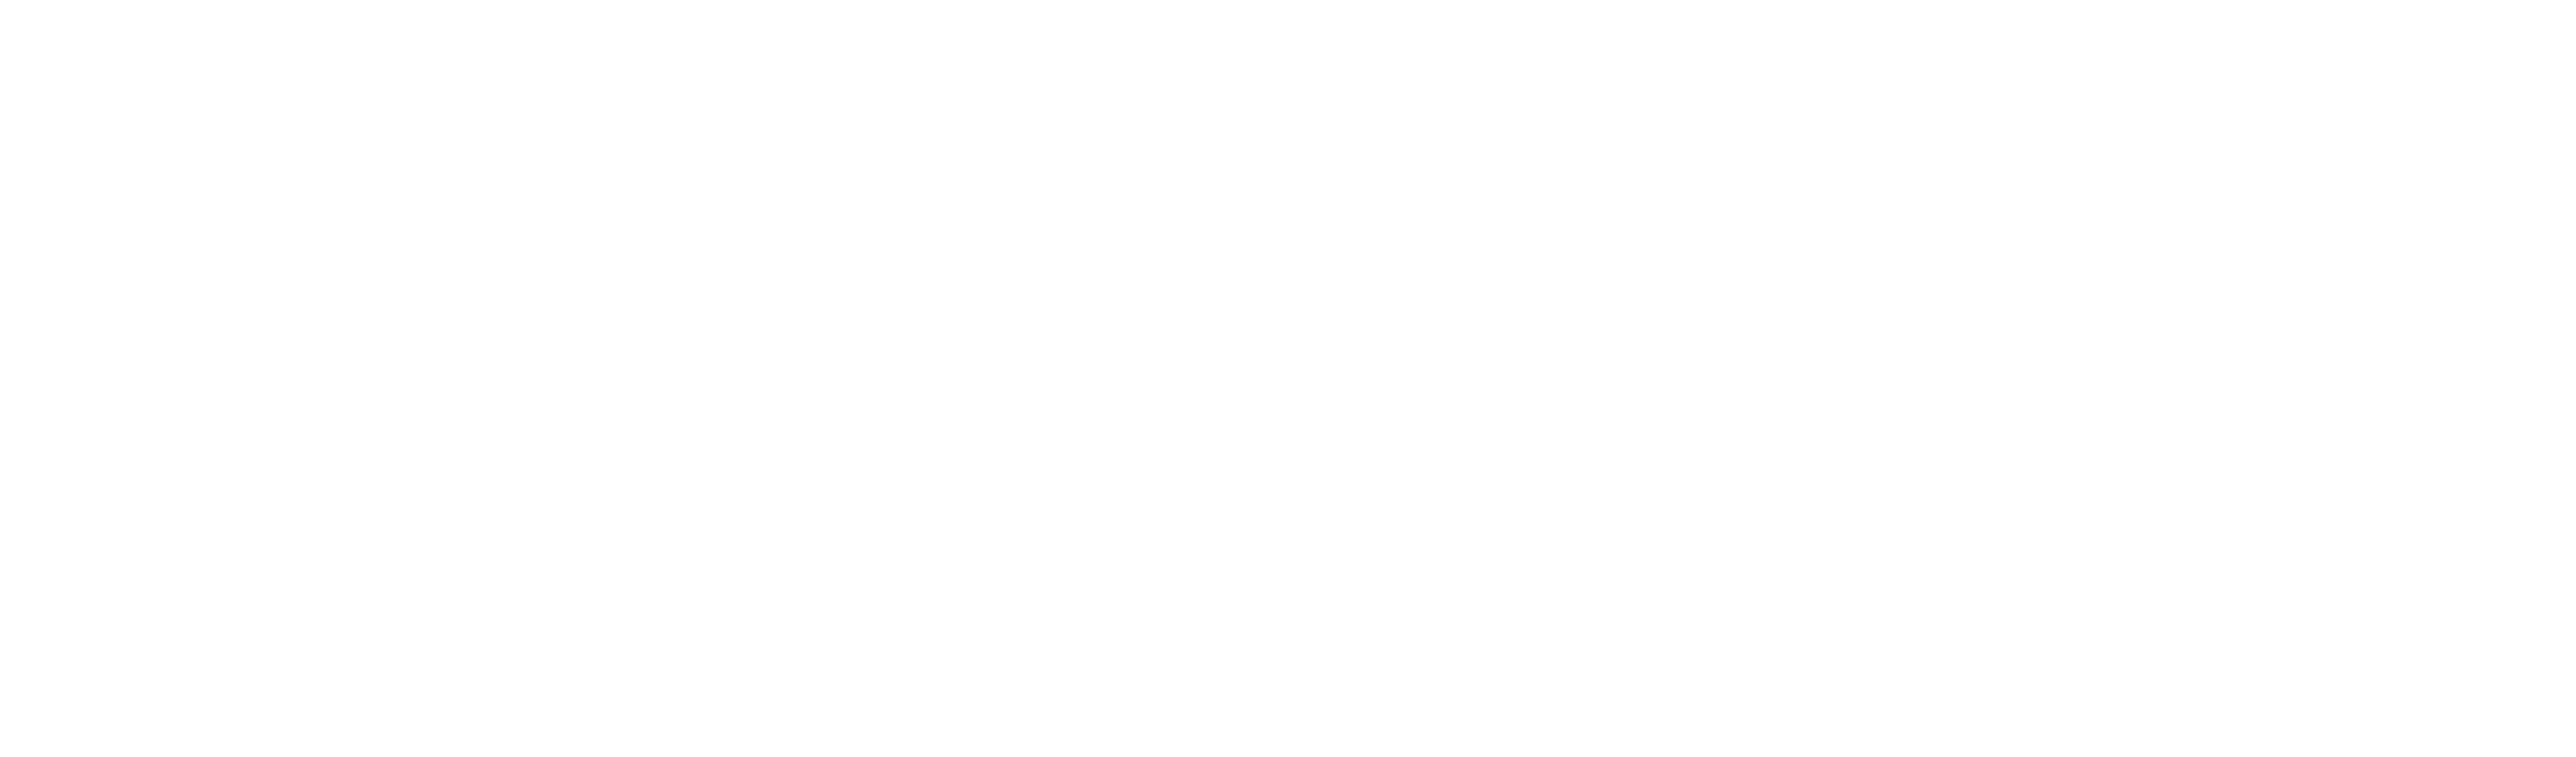 MethodData Logo